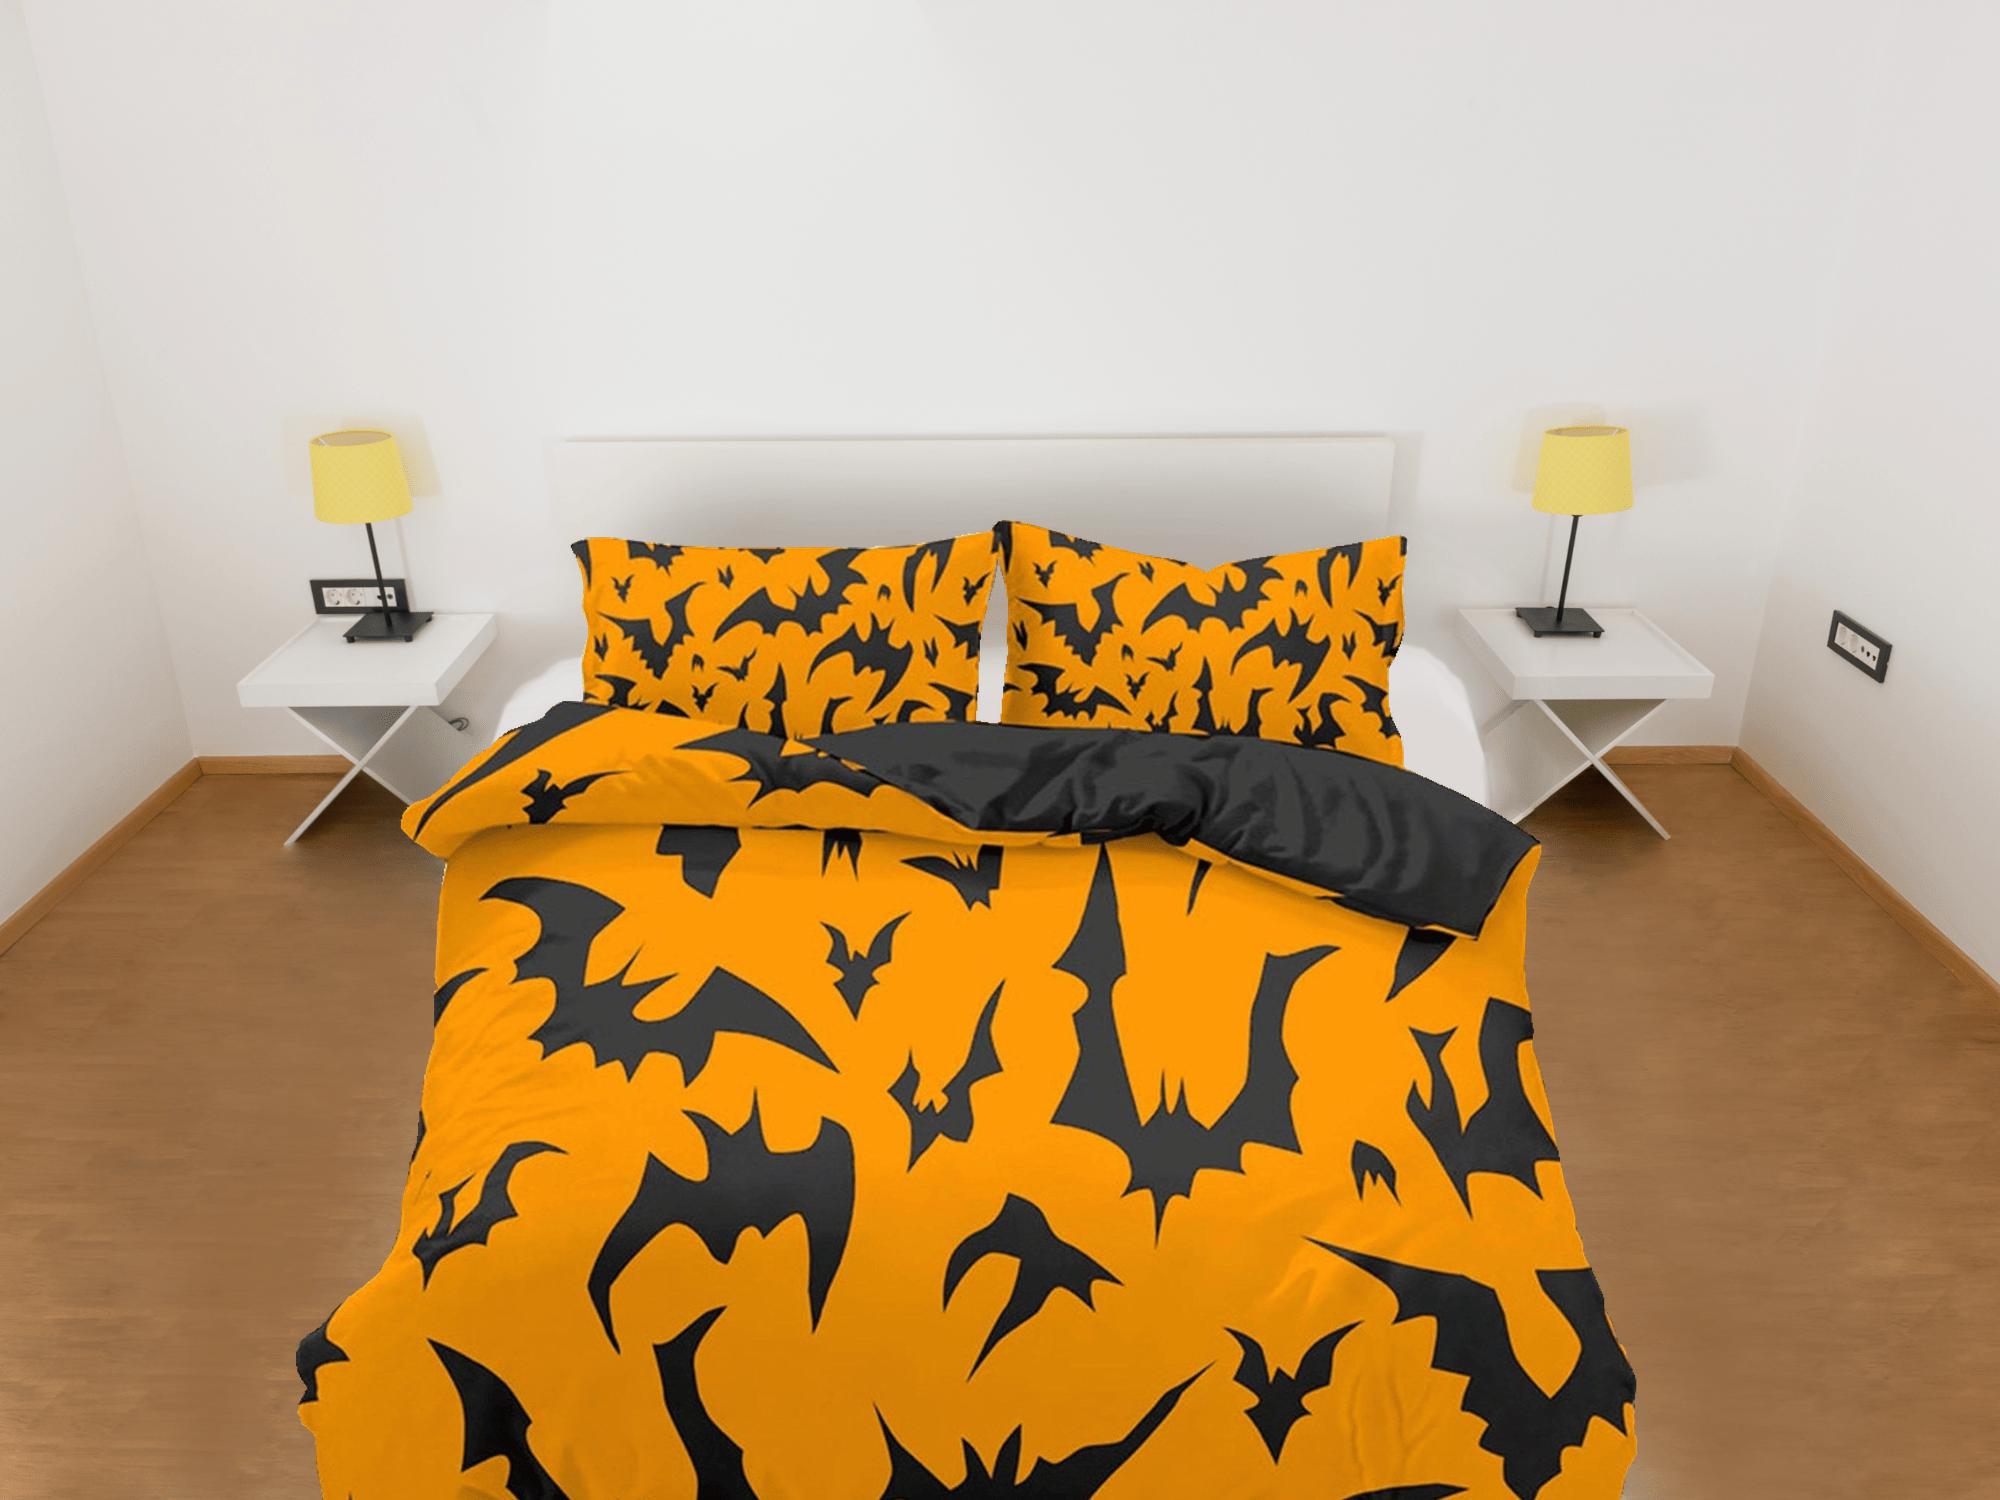 daintyduvet Bats design pattern halloween full size bedding & pillowcase, orange duvet cover set dorm bedding, nursery toddler bedding, halloween gift